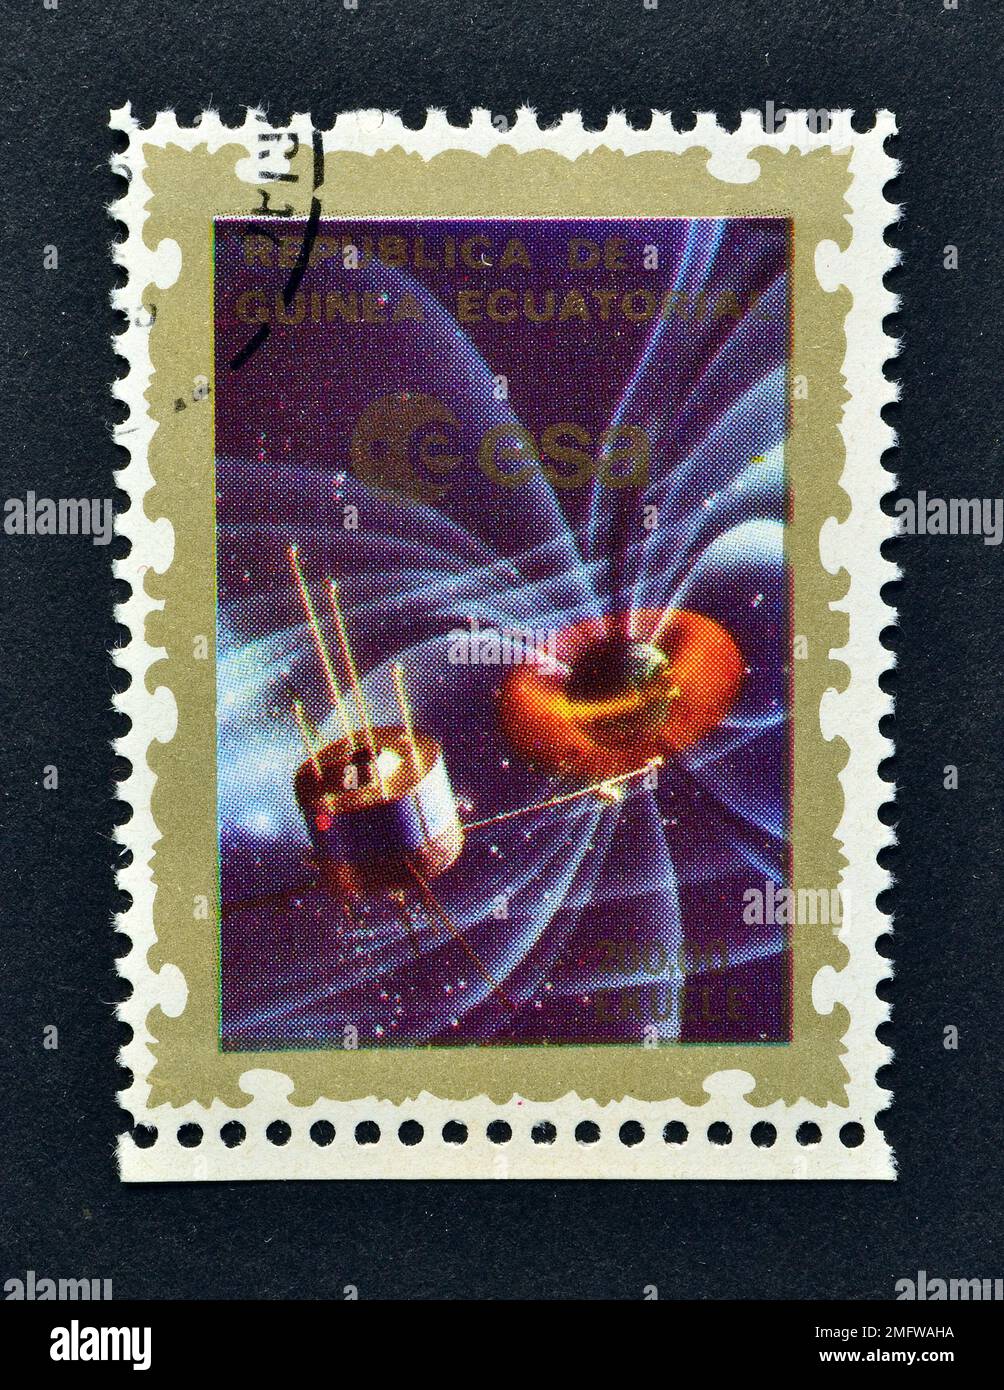 Von Äquatorialguinea gedruckte Briefmarke, die Satellit, Europäische Weltraumorganisation (ESA) um 1977, zeigt. Stockfoto